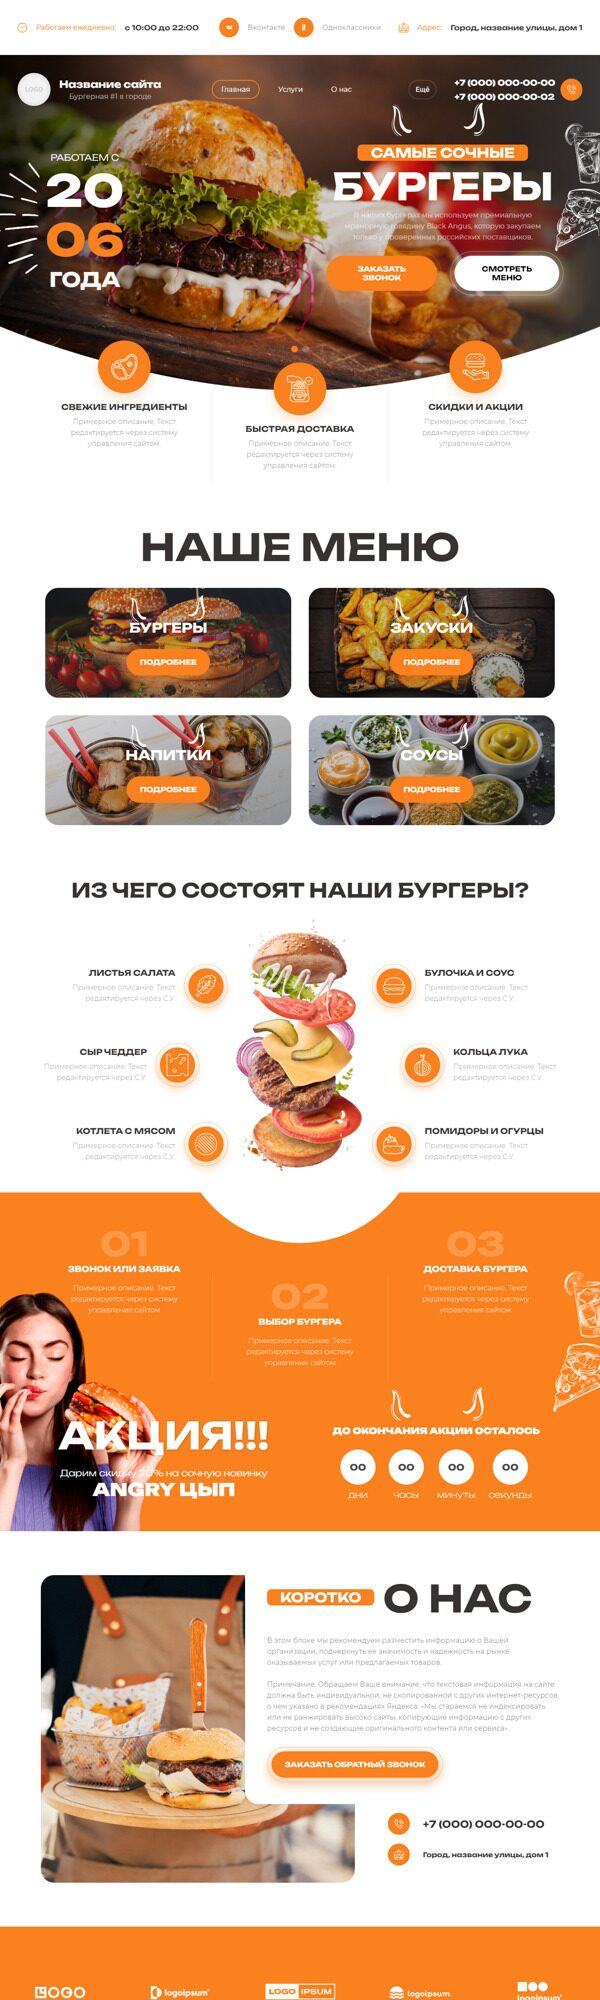 Готовый Сайт-Бизнес № 5716131 - Бургерная в Москве (Десктопная версия)